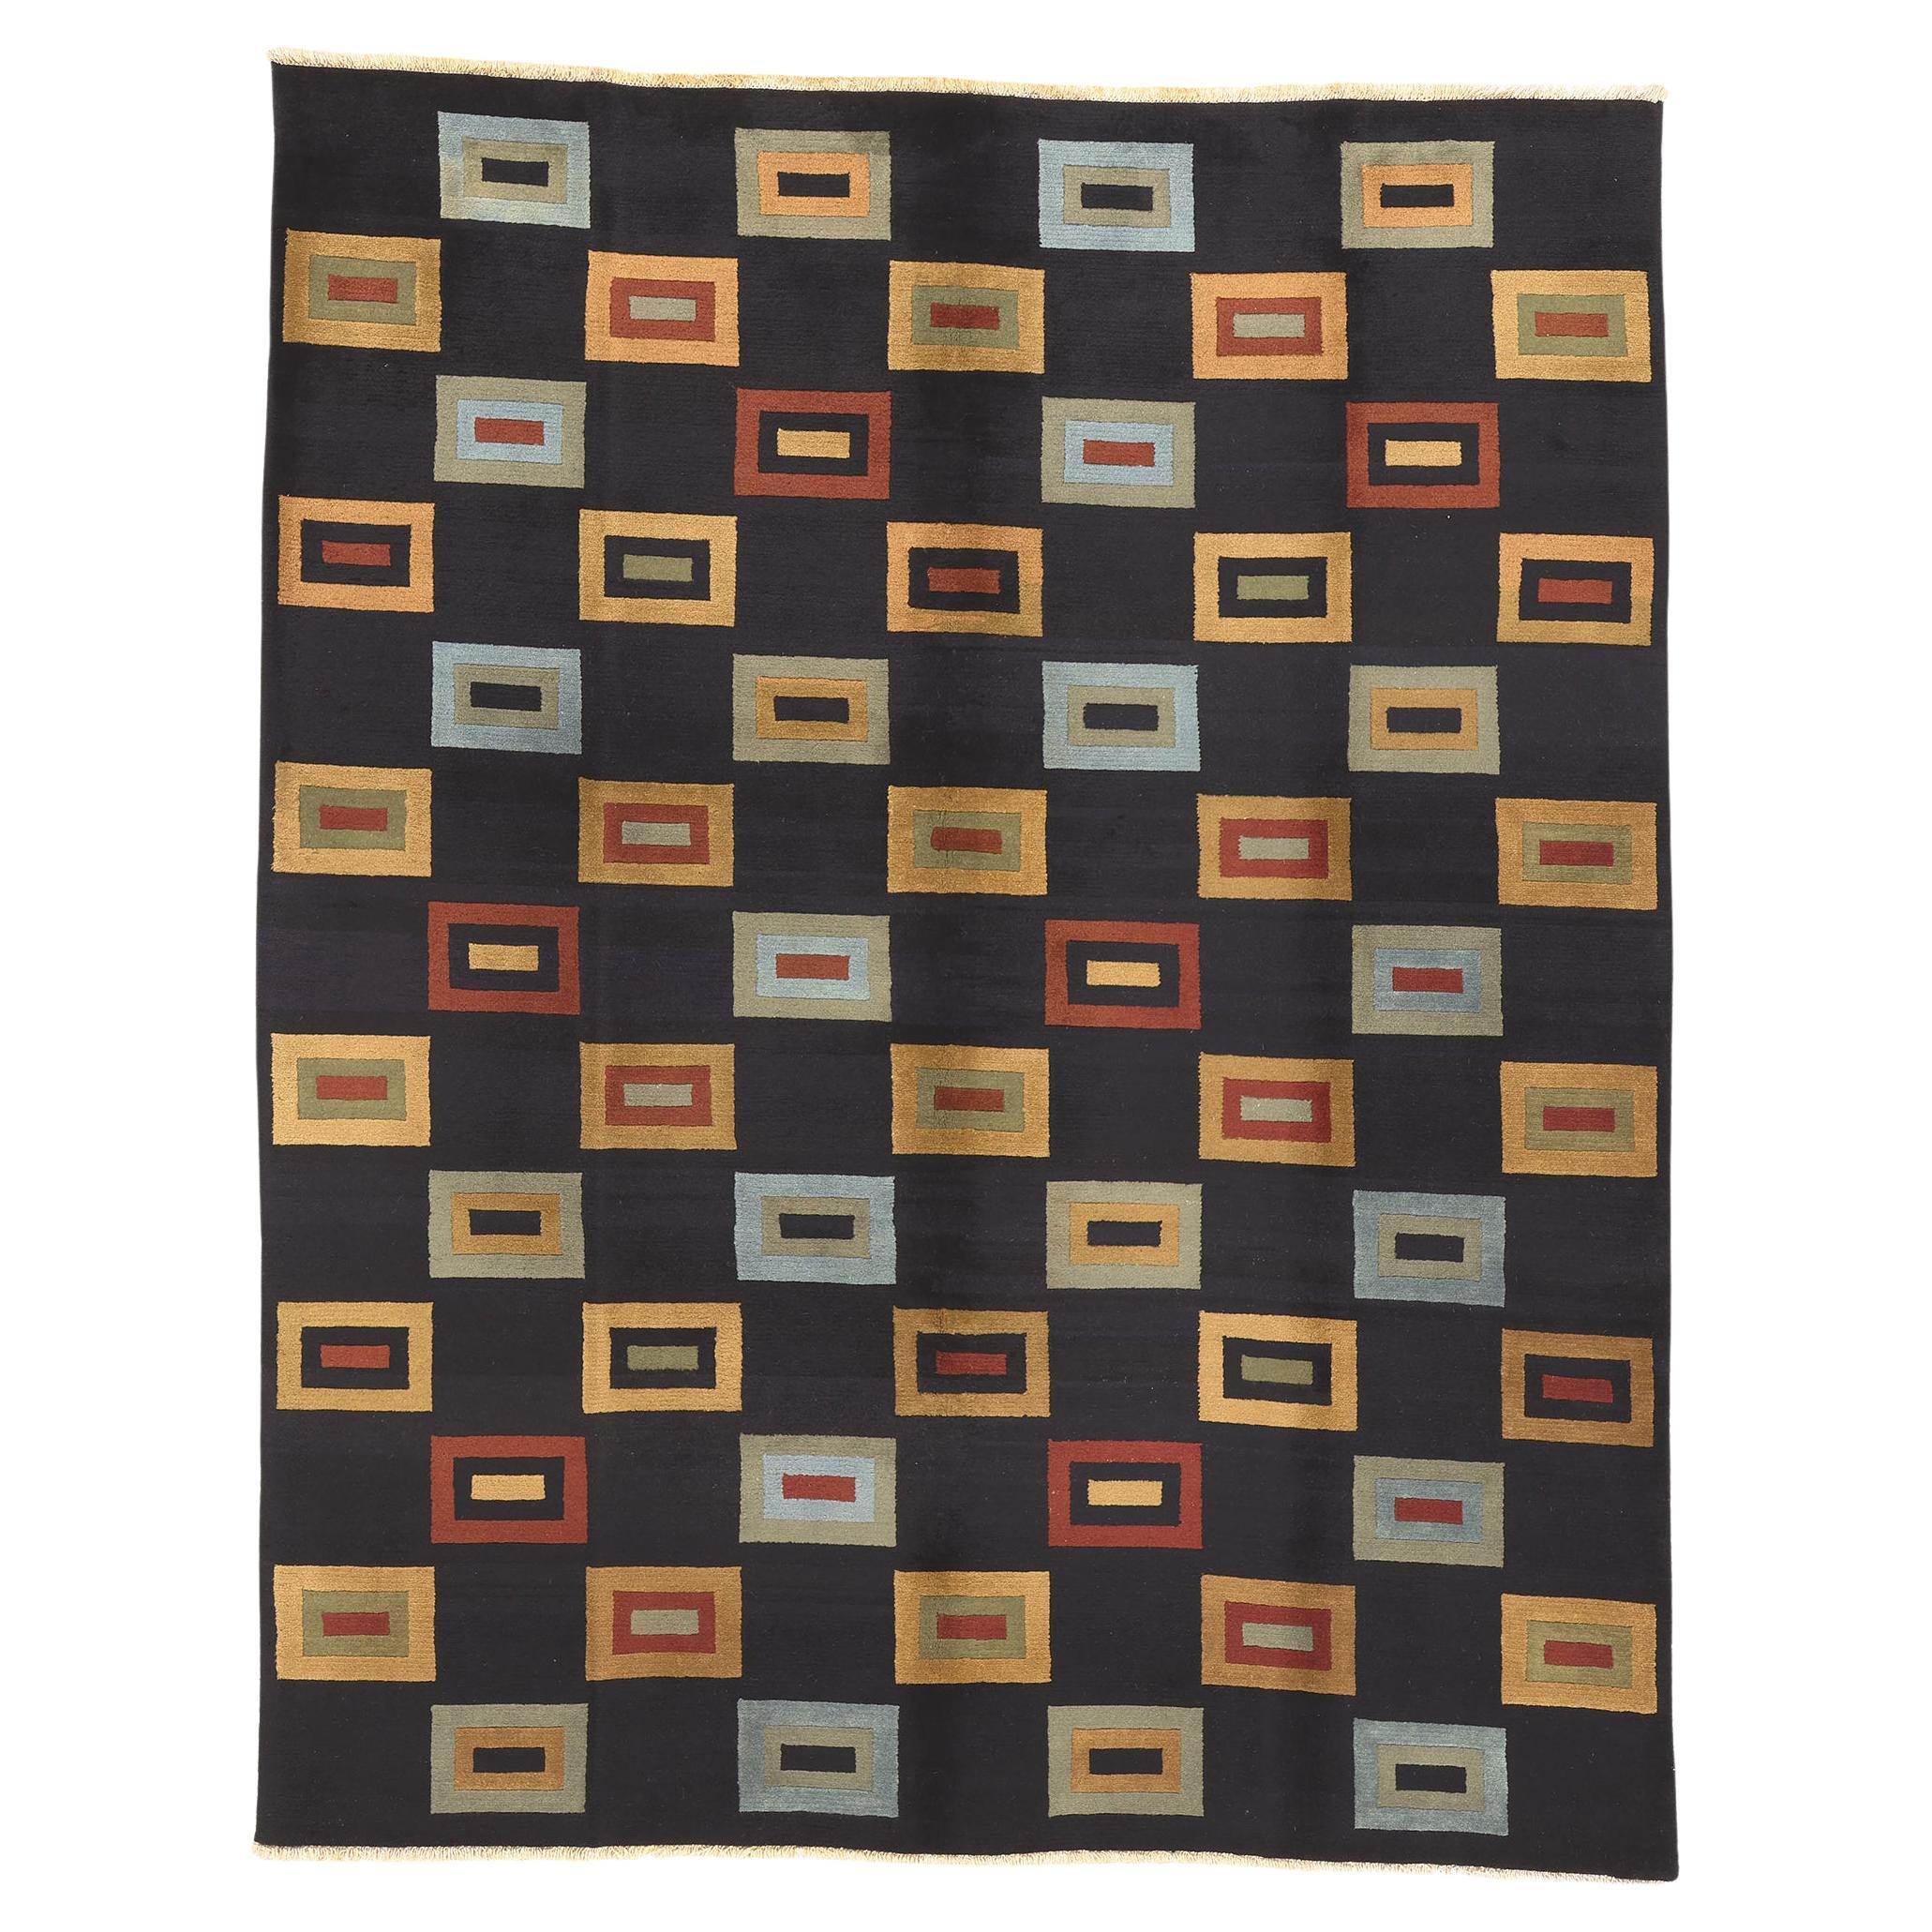 Tapis tibétain vintage avec tapis cubiste post-moderne de style Douglas Coupland